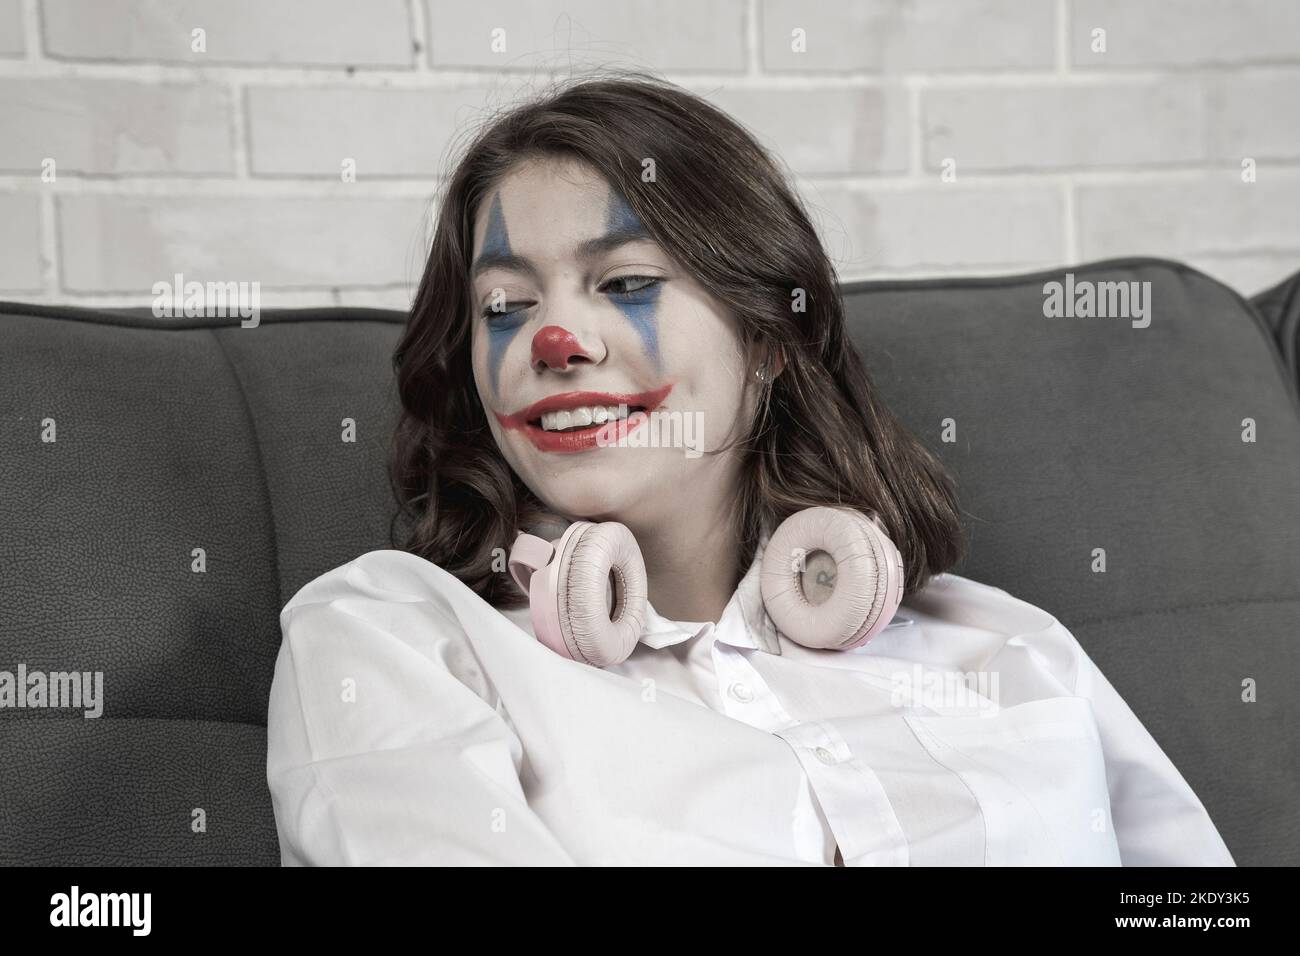 Ein Teenager-Mädchen mit Clown Make-up spricht emotional über etwas Stockfoto